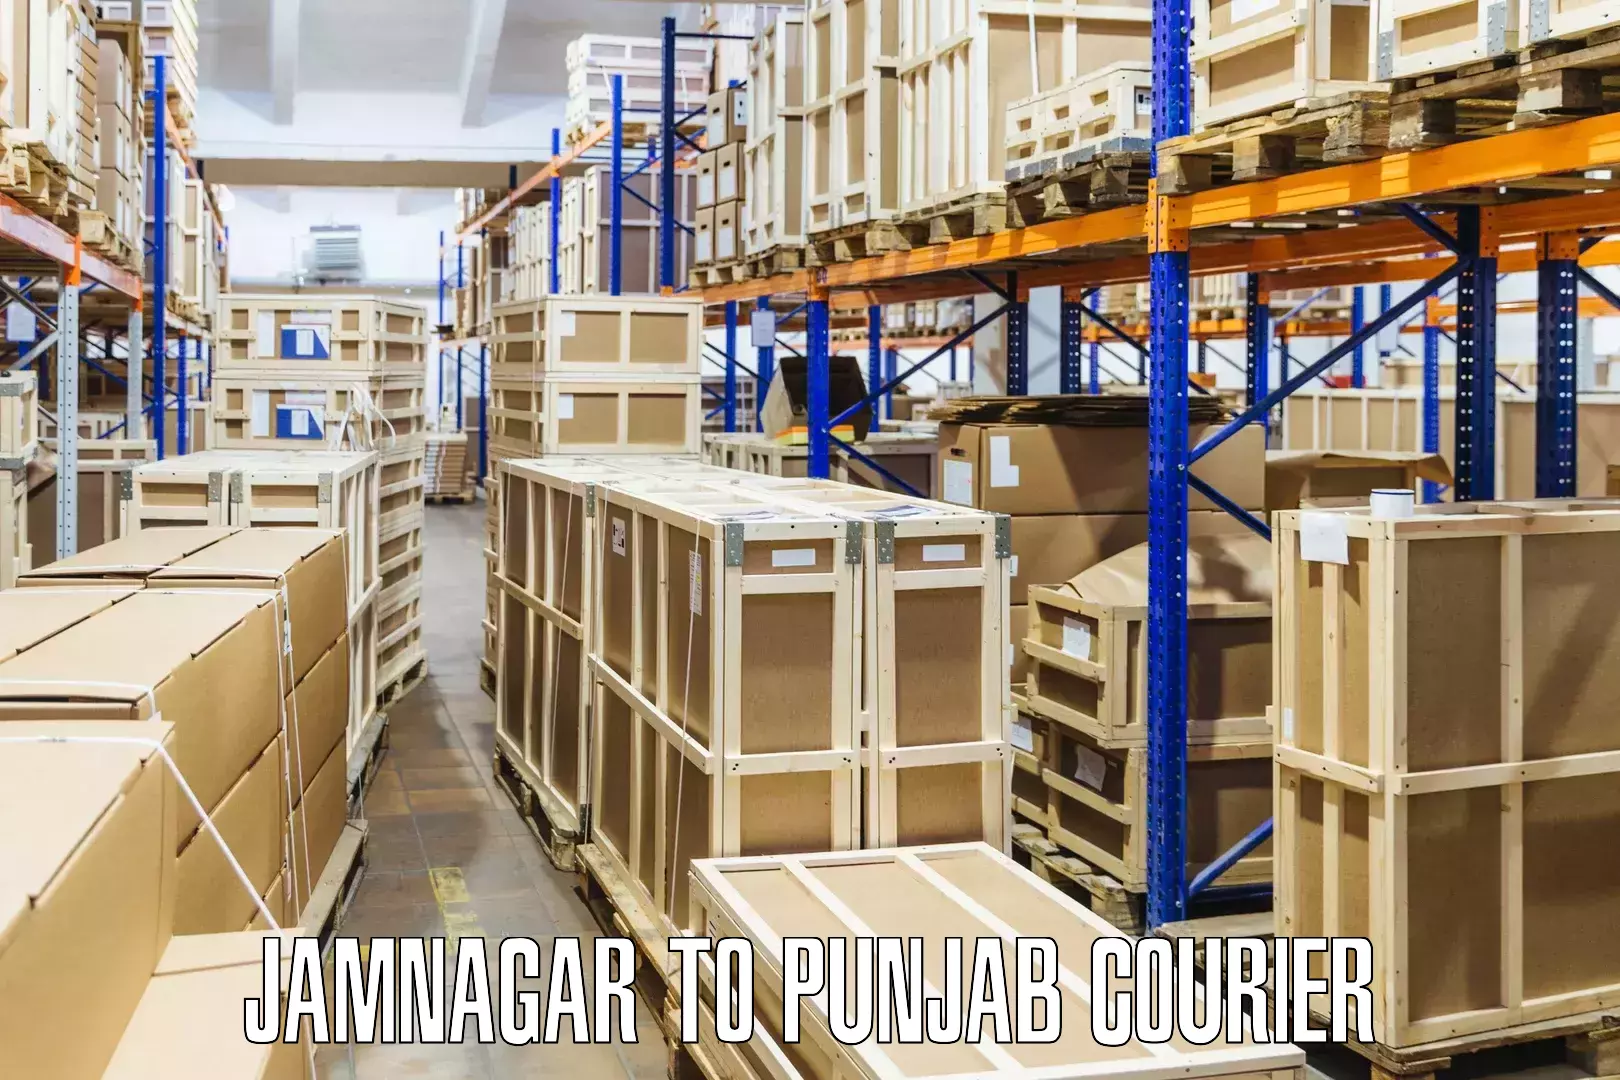 Domestic courier Jamnagar to Sirhind Fatehgarh